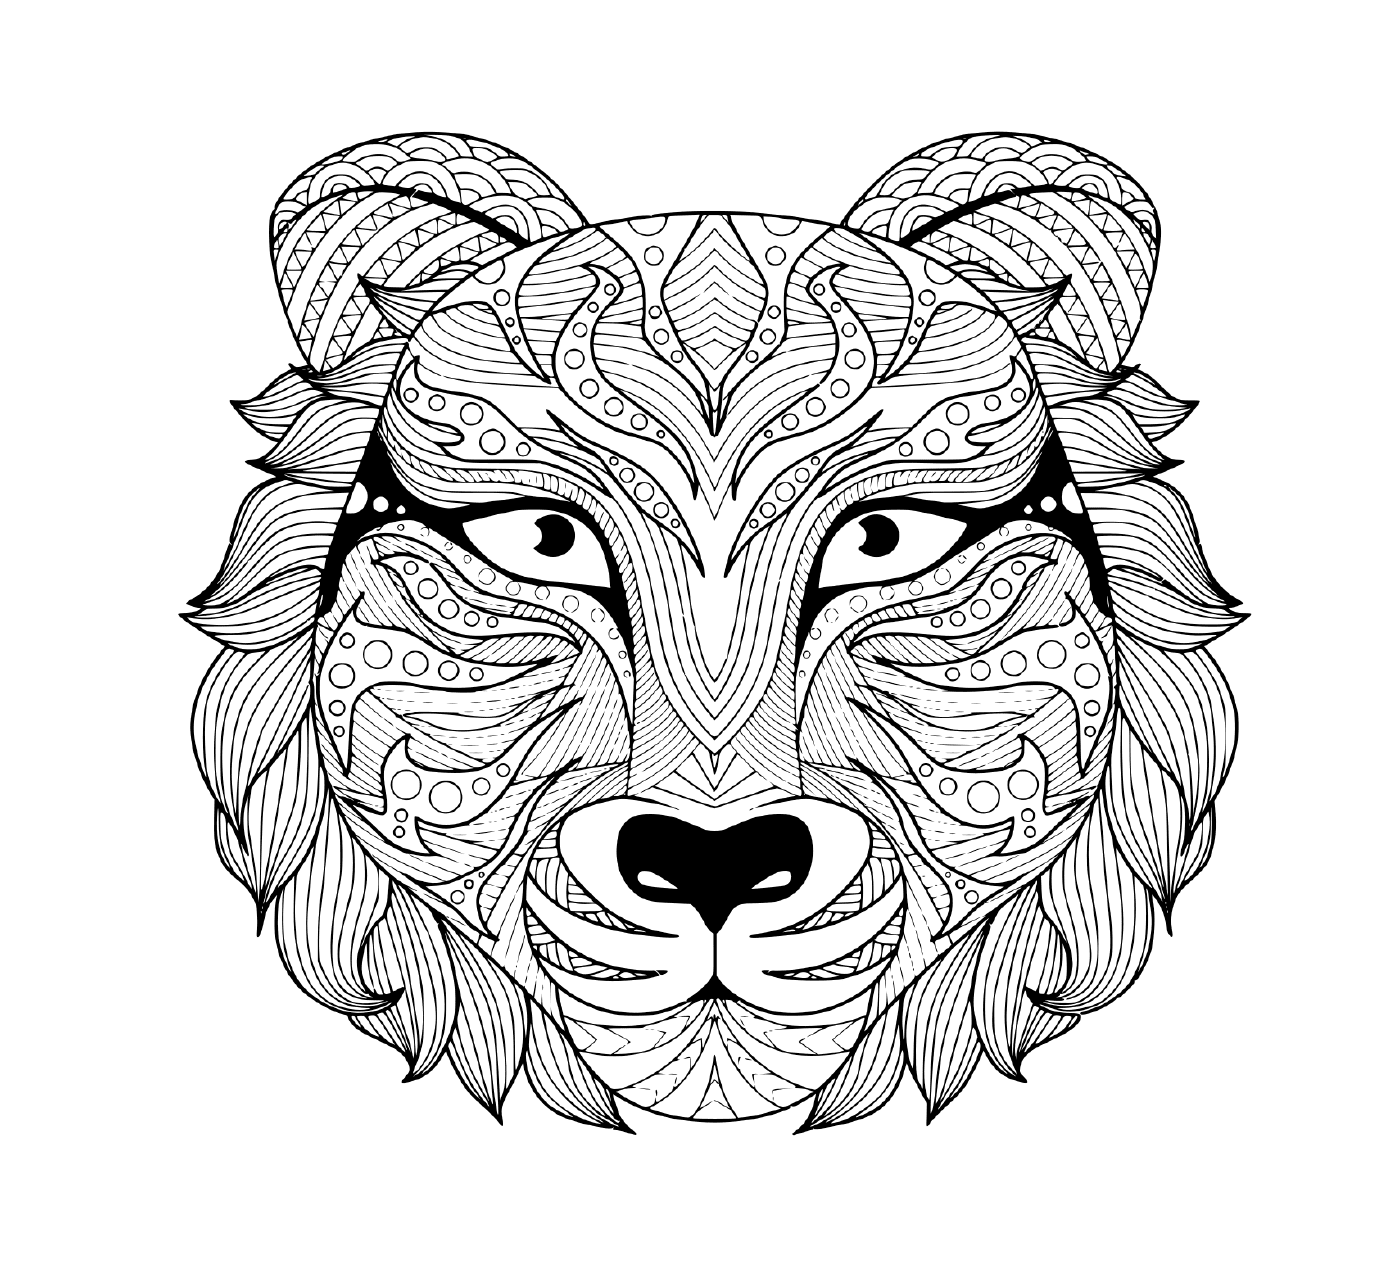   une représentation tatouée d'une tête de tigre adulte avec des yeux colorés 